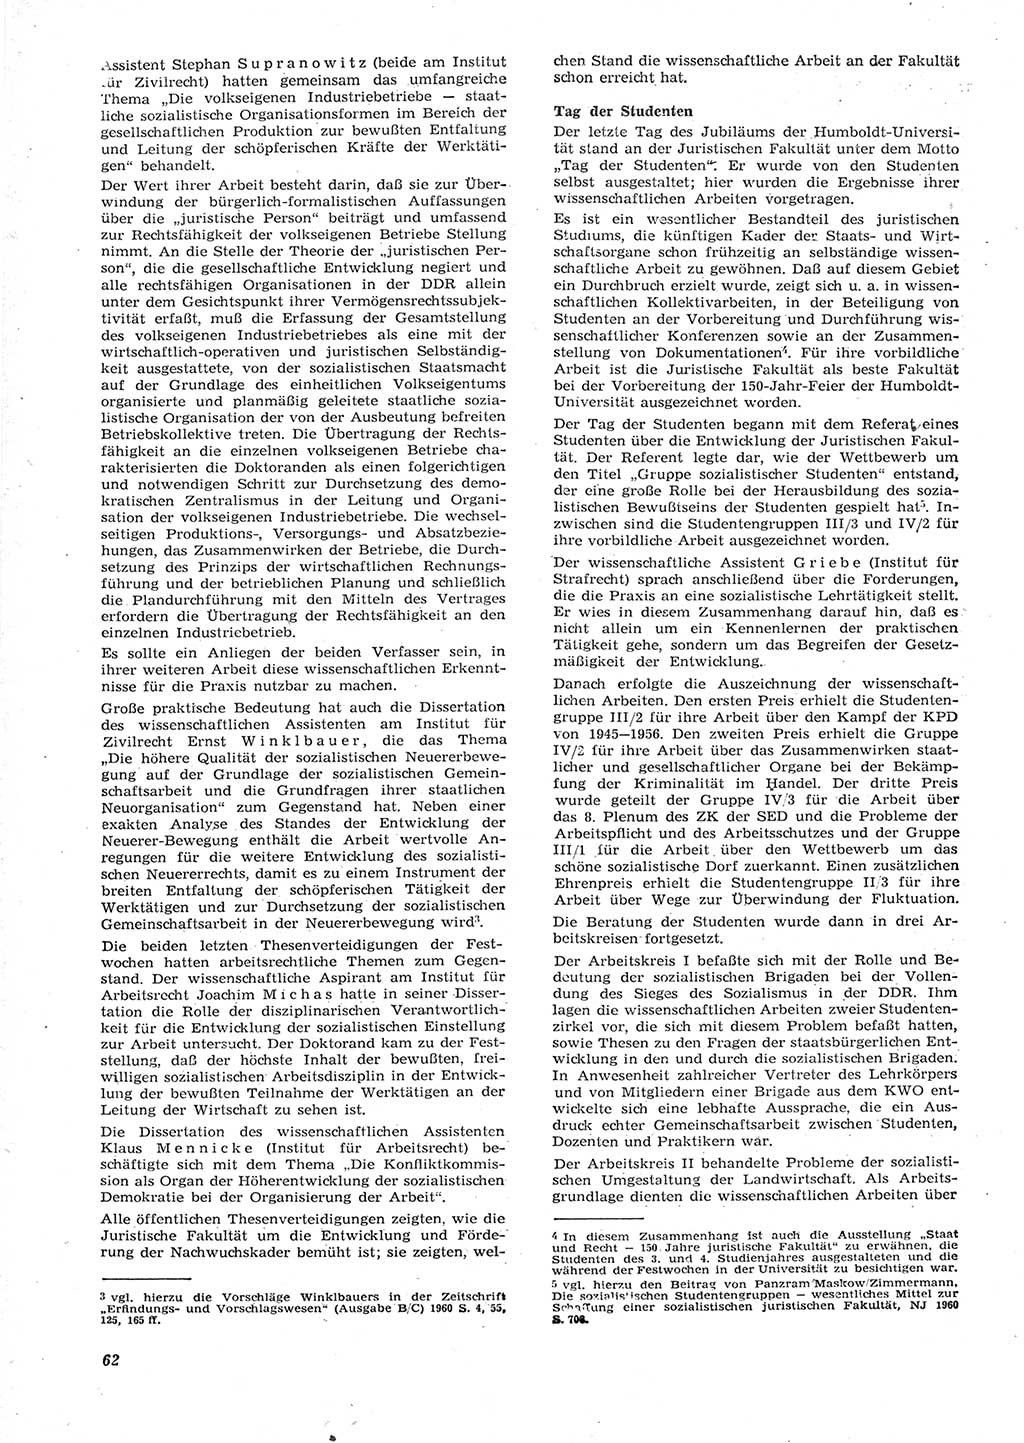 Neue Justiz (NJ), Zeitschrift für Recht und Rechtswissenschaft [Deutsche Demokratische Republik (DDR)], 15. Jahrgang 1961, Seite 62 (NJ DDR 1961, S. 62)